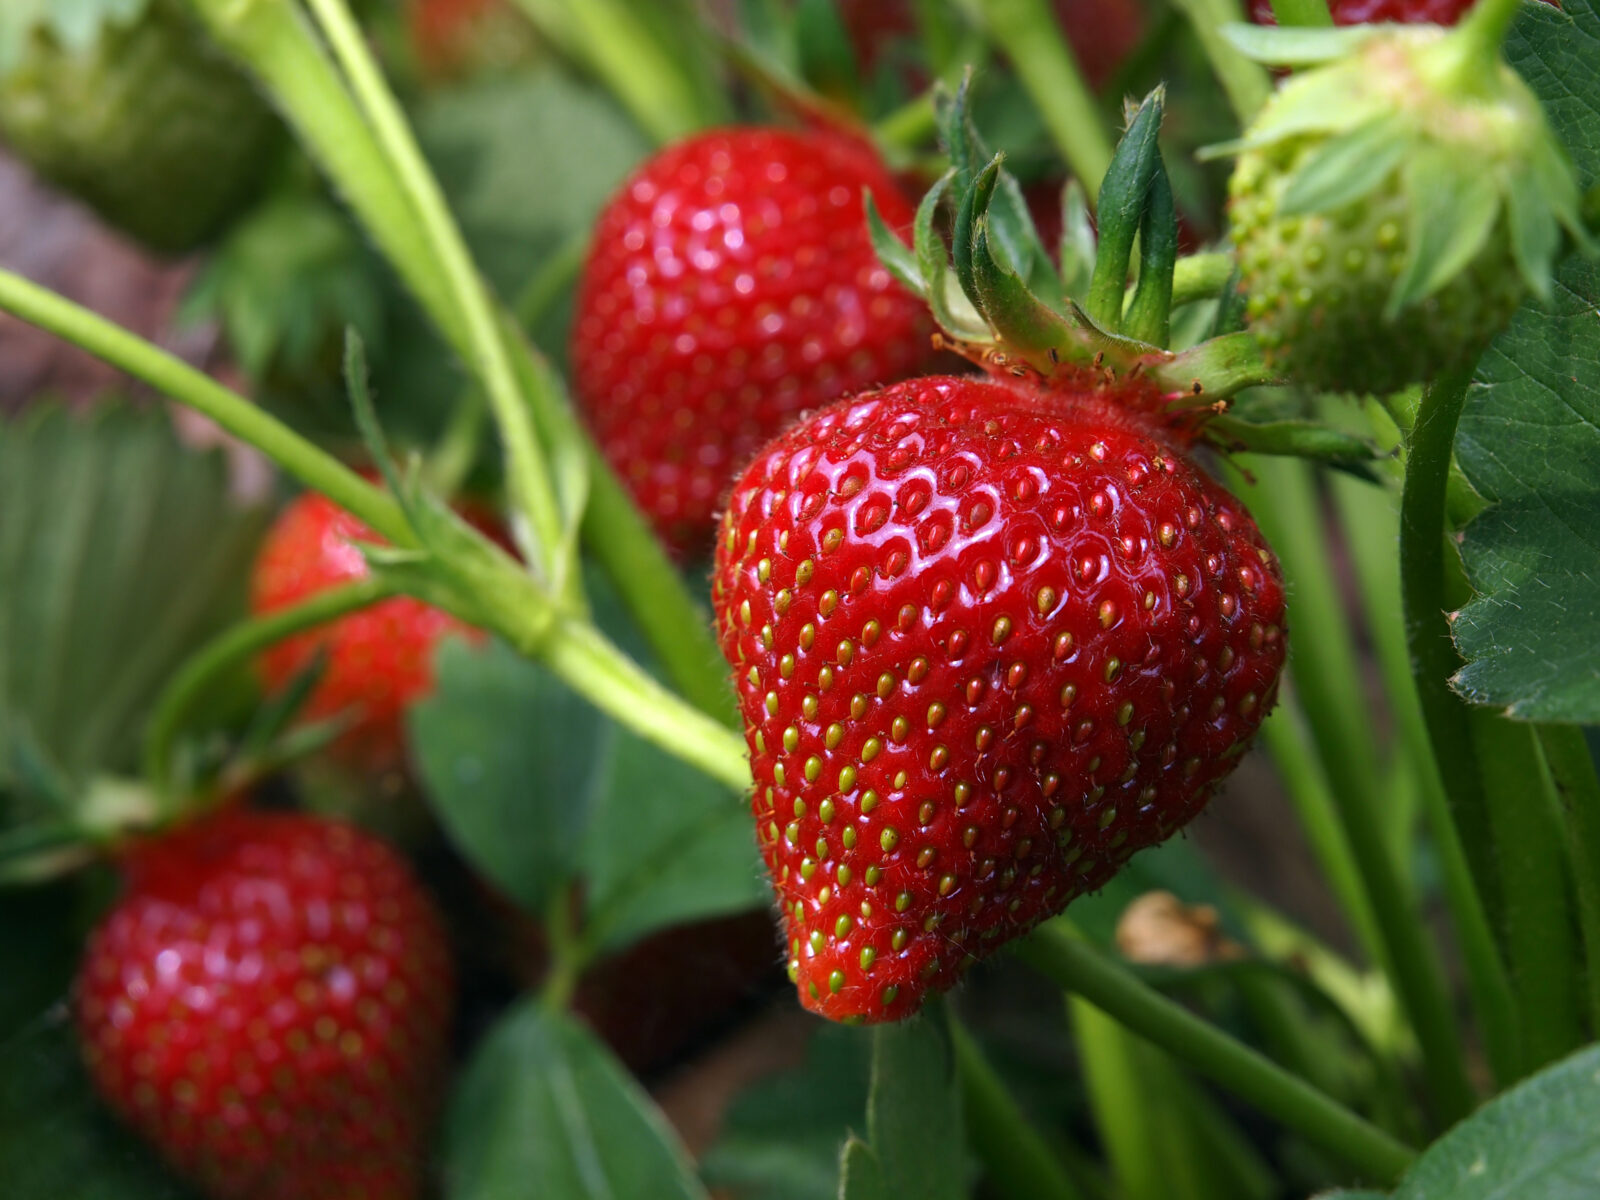 Where can I buy Azim strawberries?